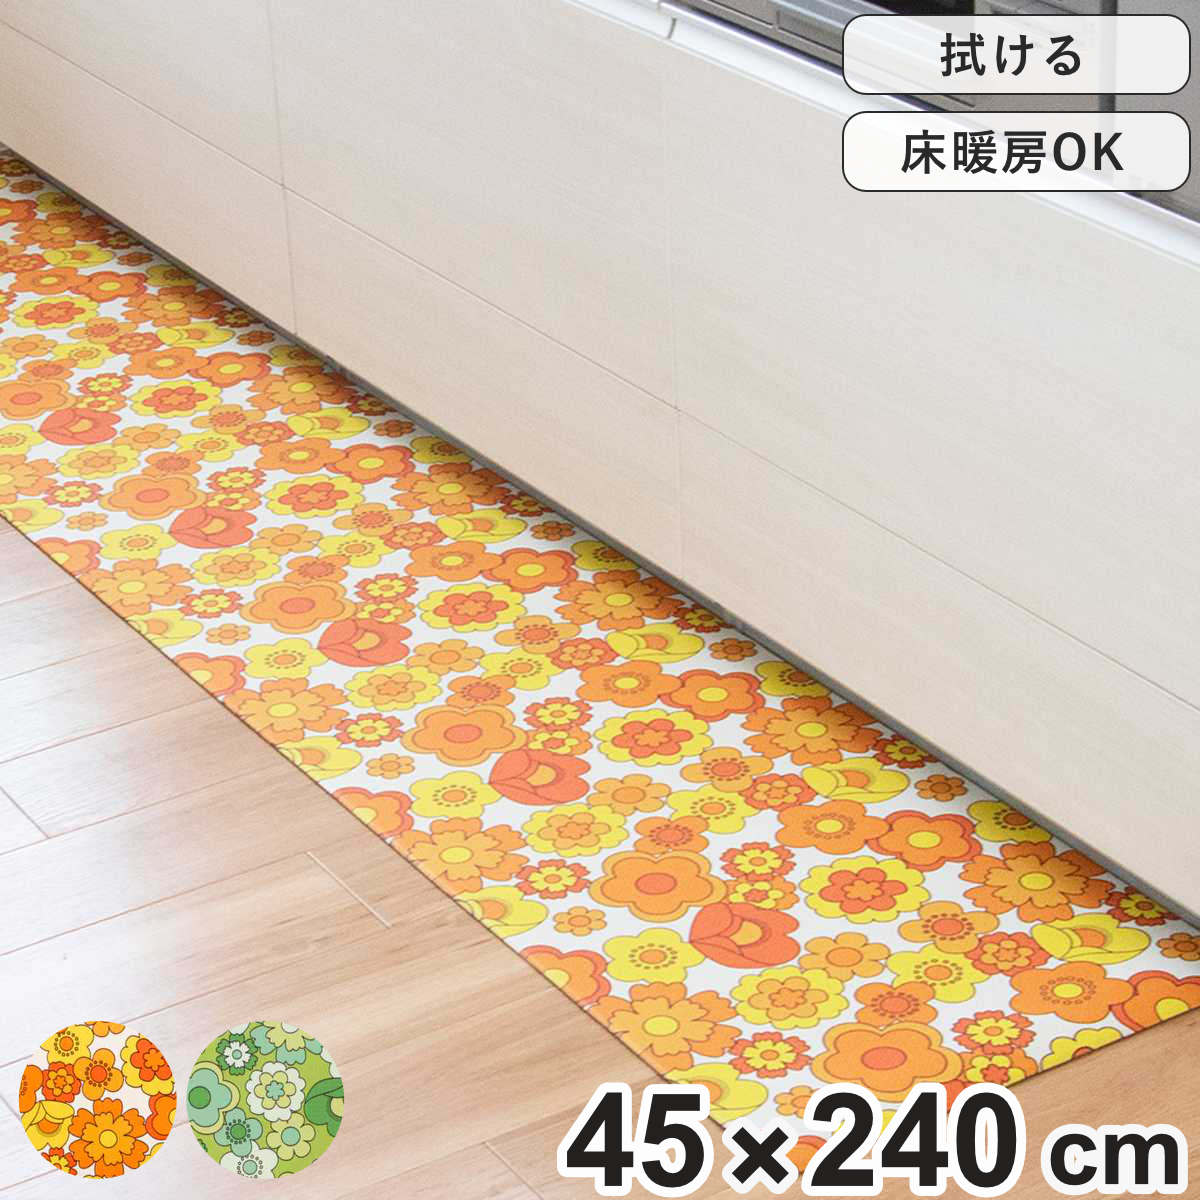 キッチンマット レトロ 花柄 ルアンス 45×240cm